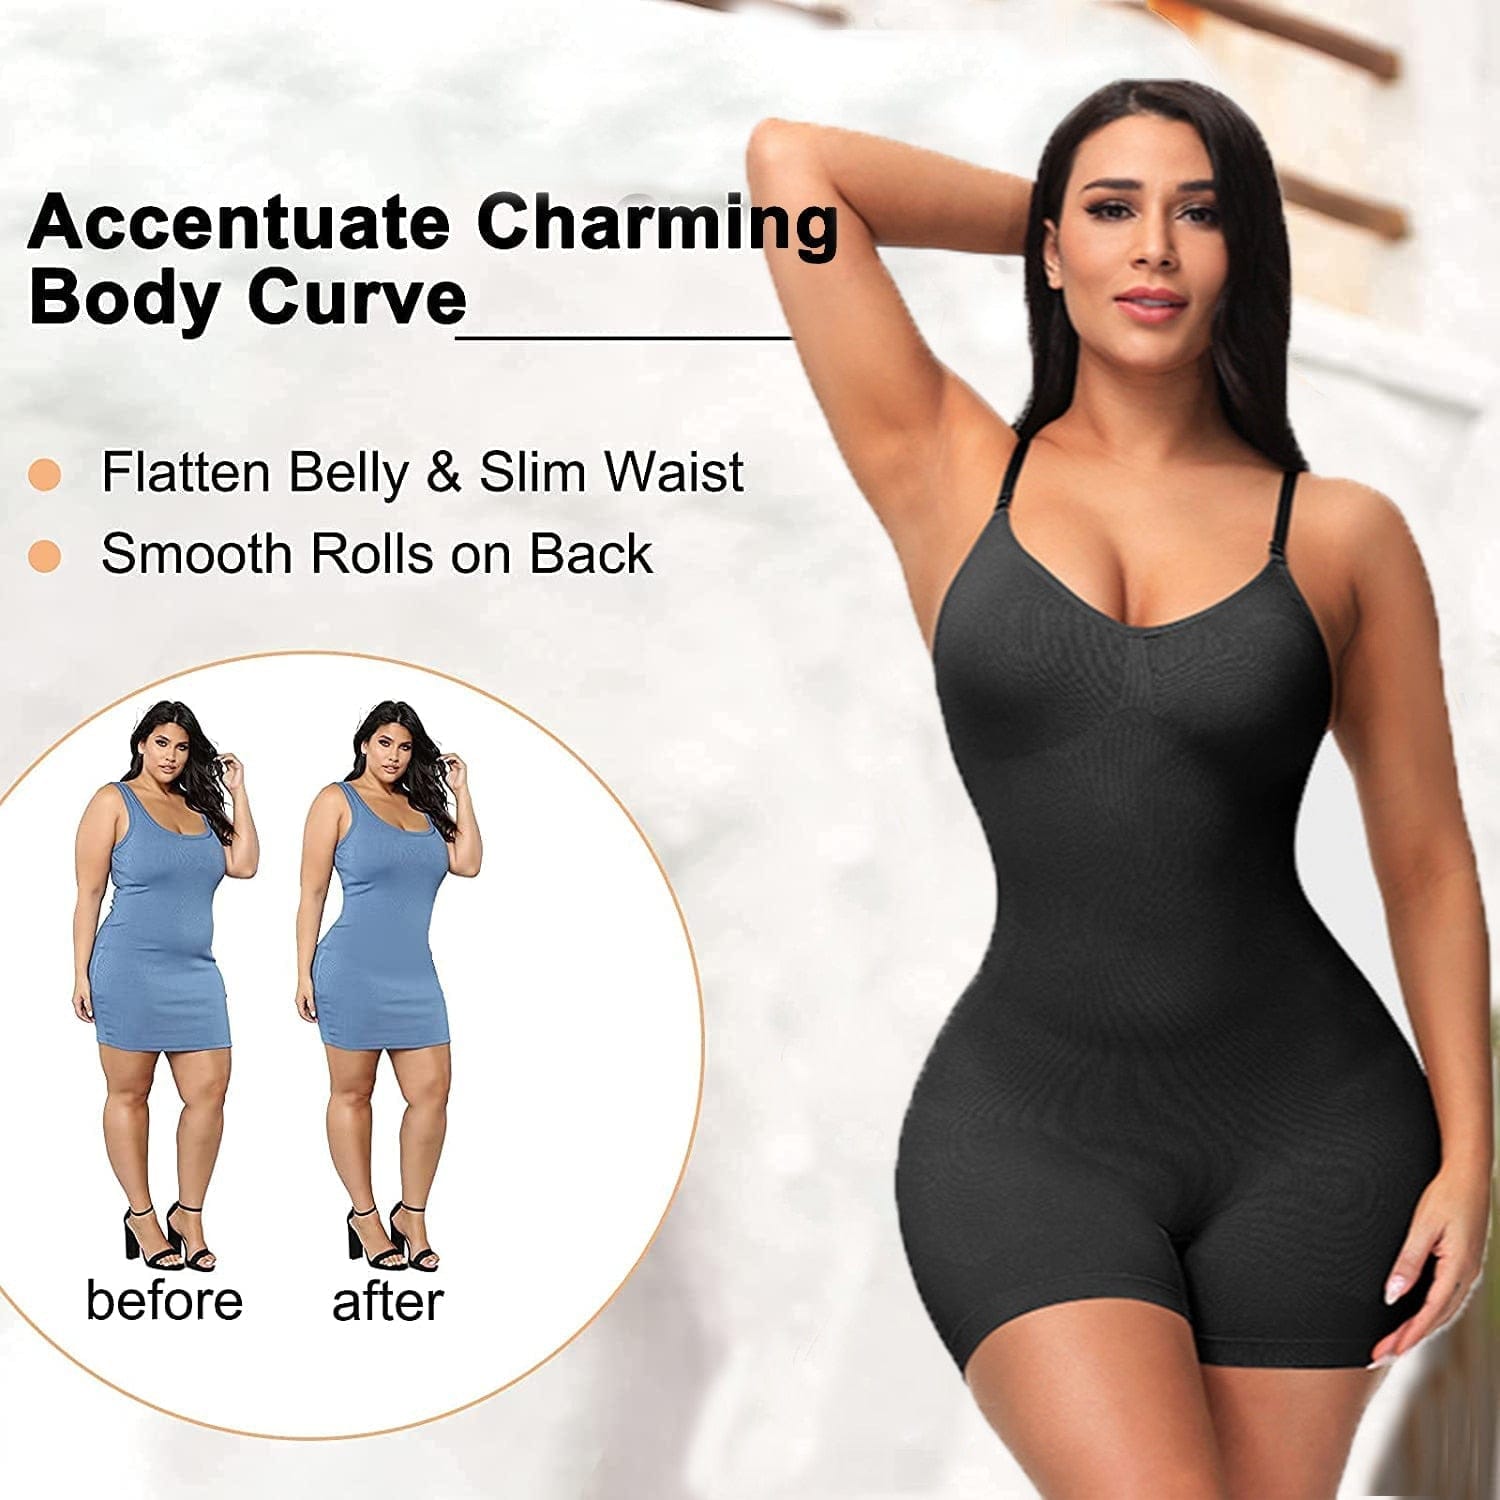 Bodysuit Full Body Shape-wear For Women